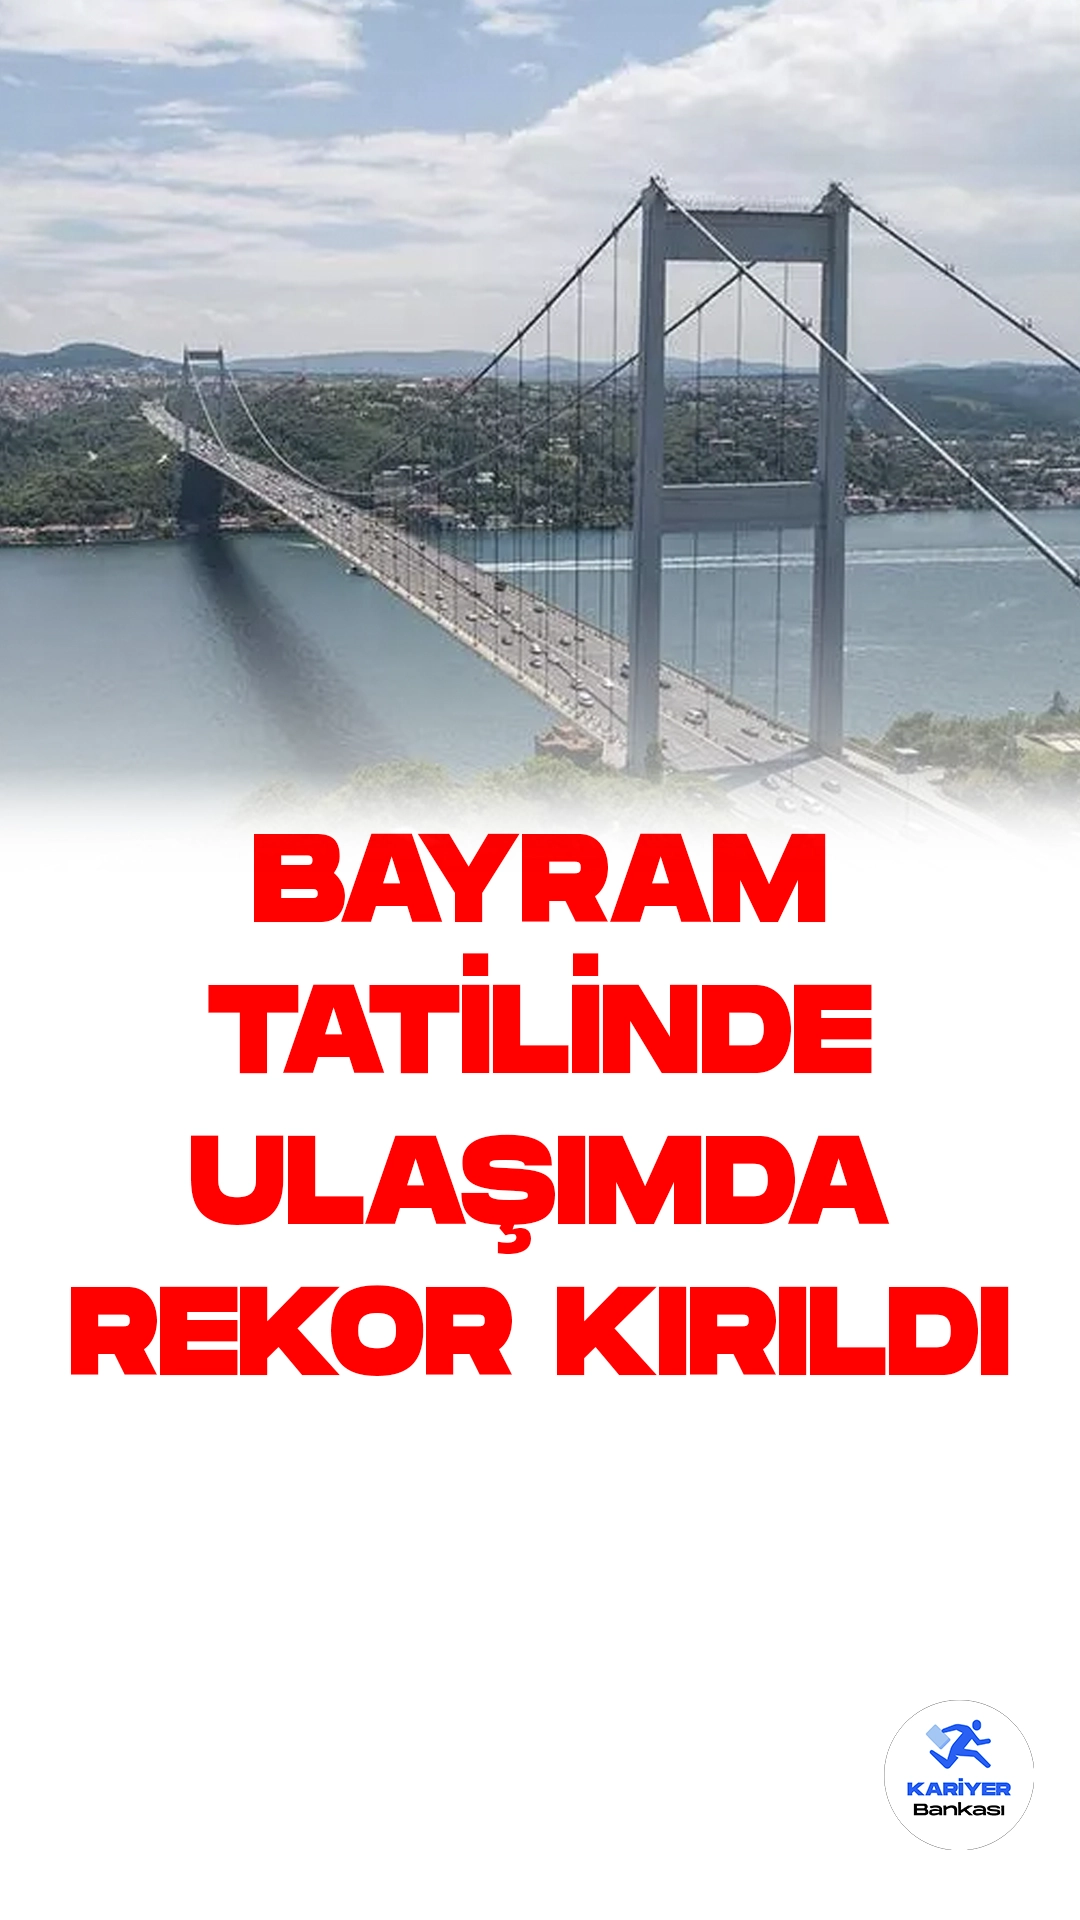 Ulaştırma ve Altyapı Bakanı Abdulkadir Uraloğlu, Köprü ve Havalimanlarında Rekorların Kırıldığını Açıkladı.